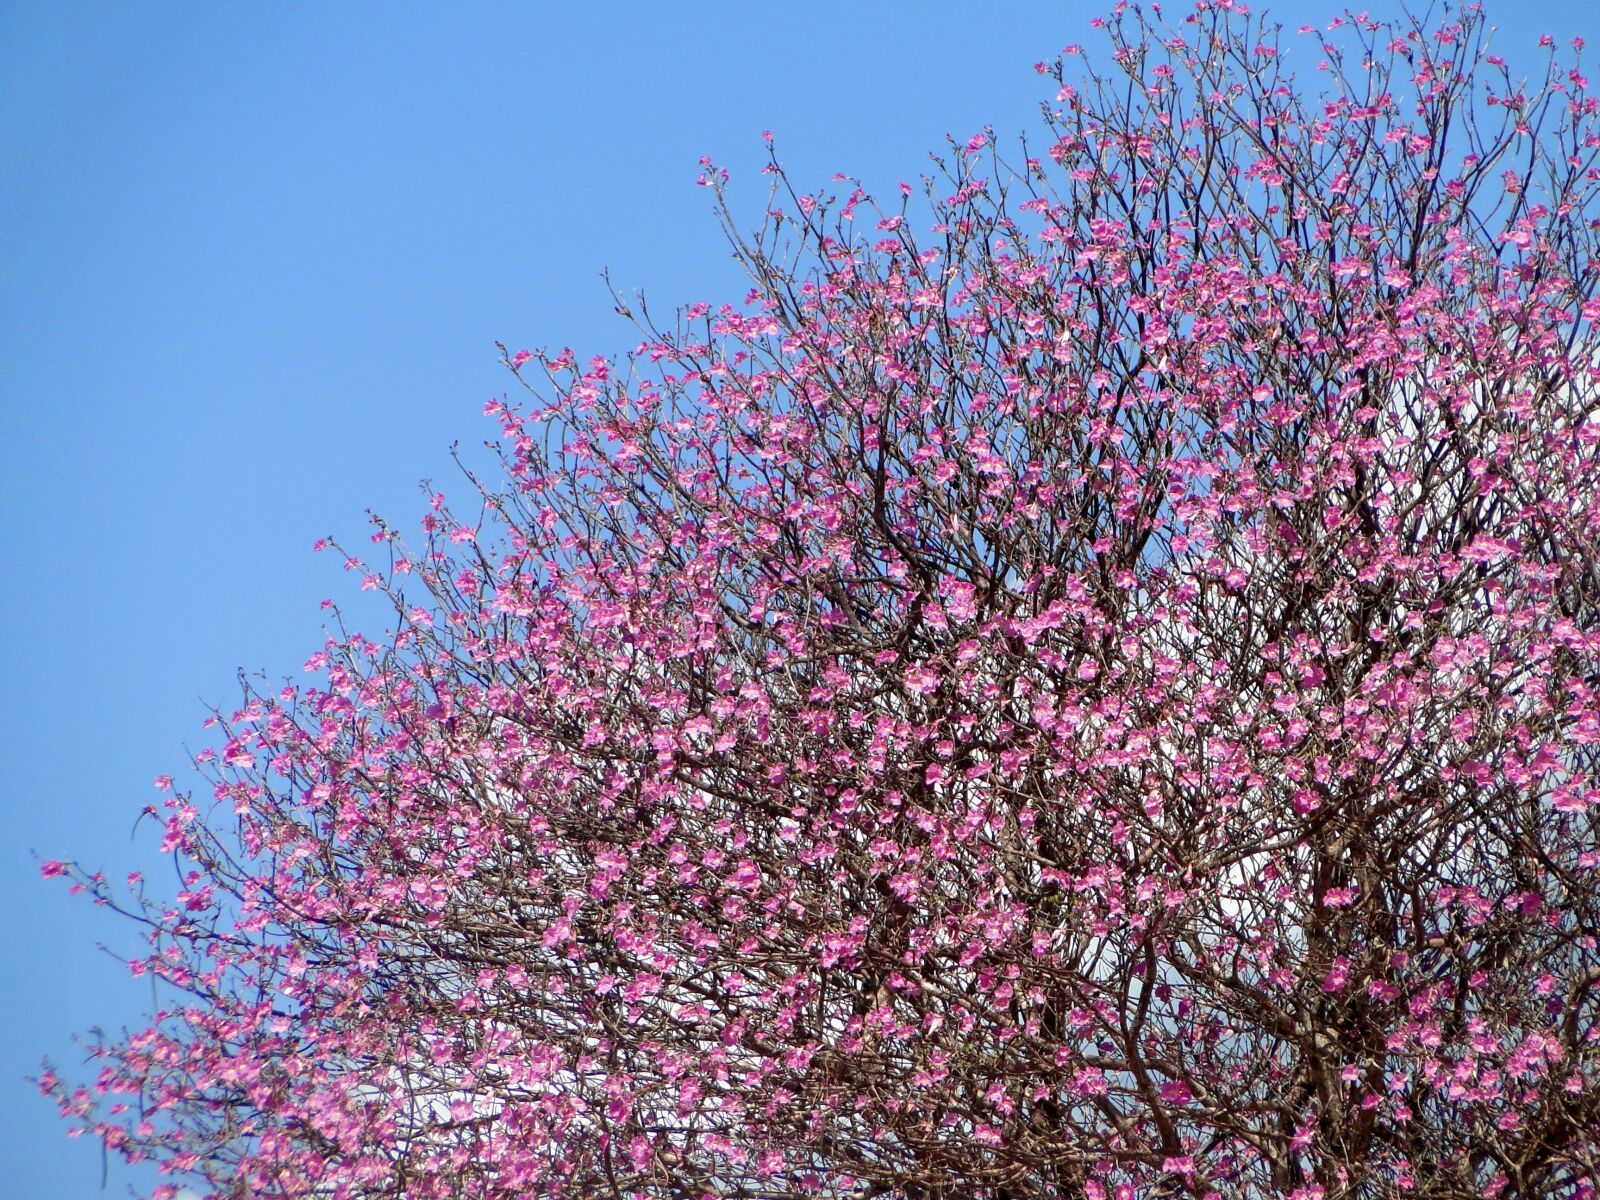 Sony Cyber-shot DSC-HX1 sample photo. Tree, pink sky, blue photography